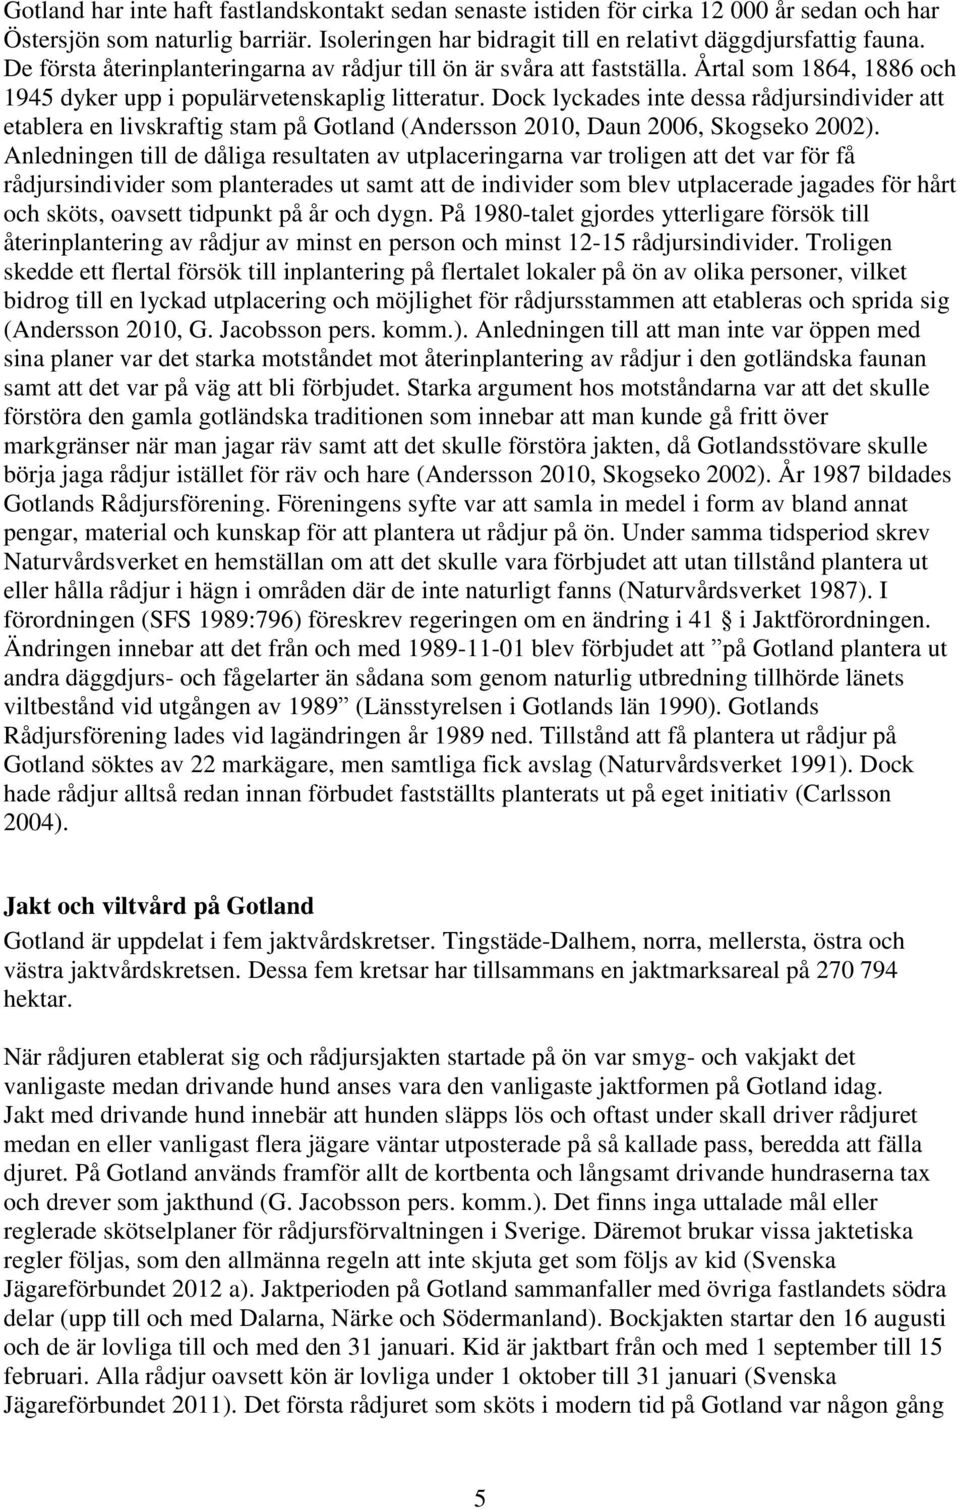 Dock lyckades inte dessa rådjursindivider att etablera en livskraftig stam på Gotland (Andersson 2010, Daun 2006, Skogseko 2002).